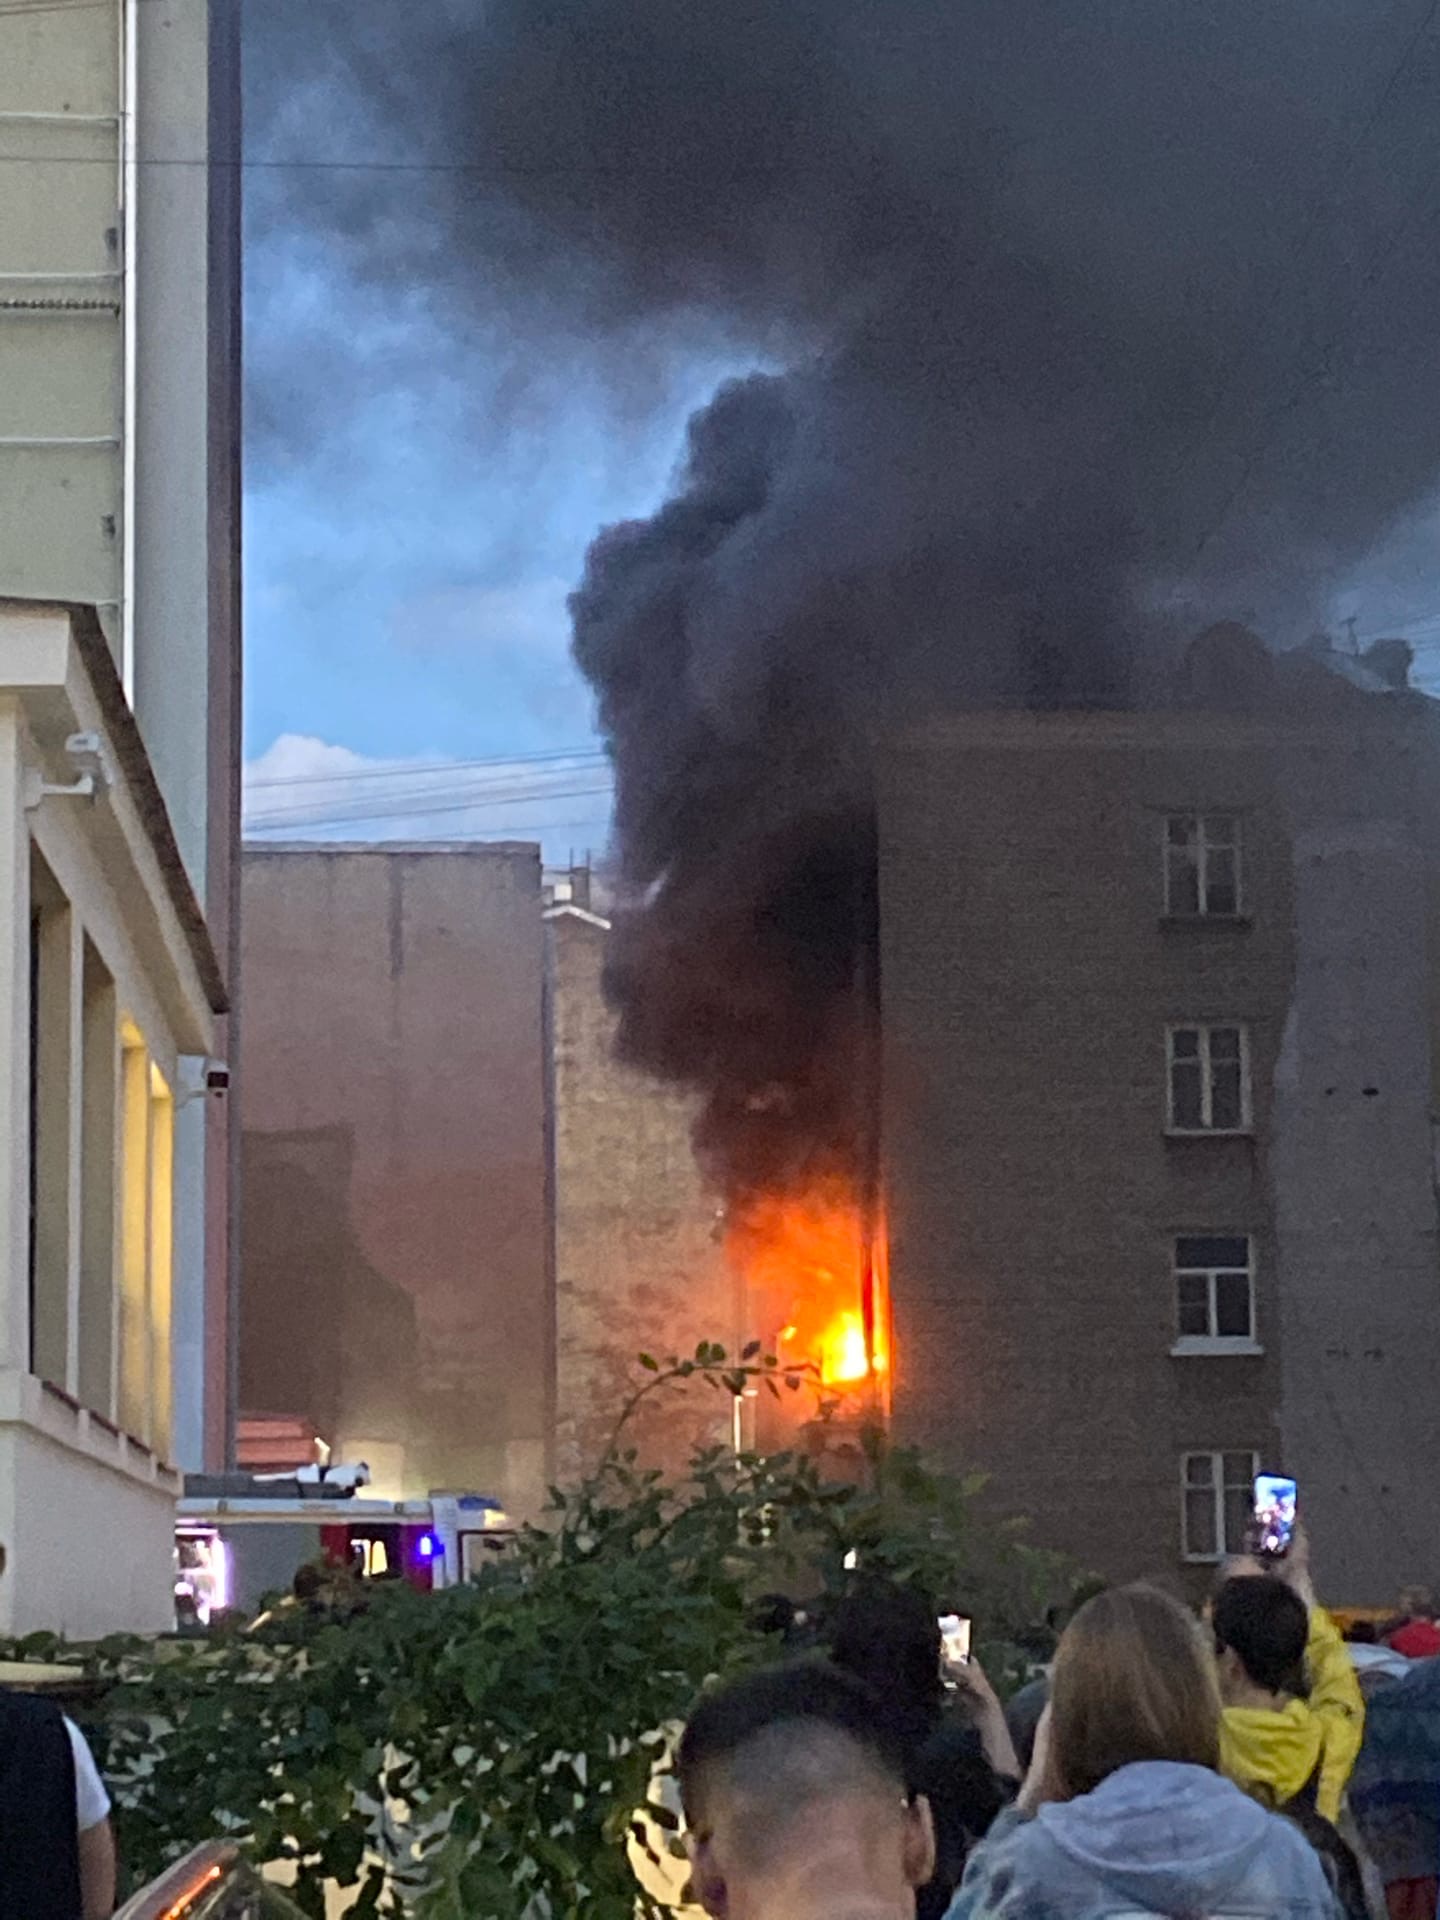 Рядом с метро «Василеостровская» тушат квартирный пожар по повышенному номеру. О помощи просят с последнего этажа